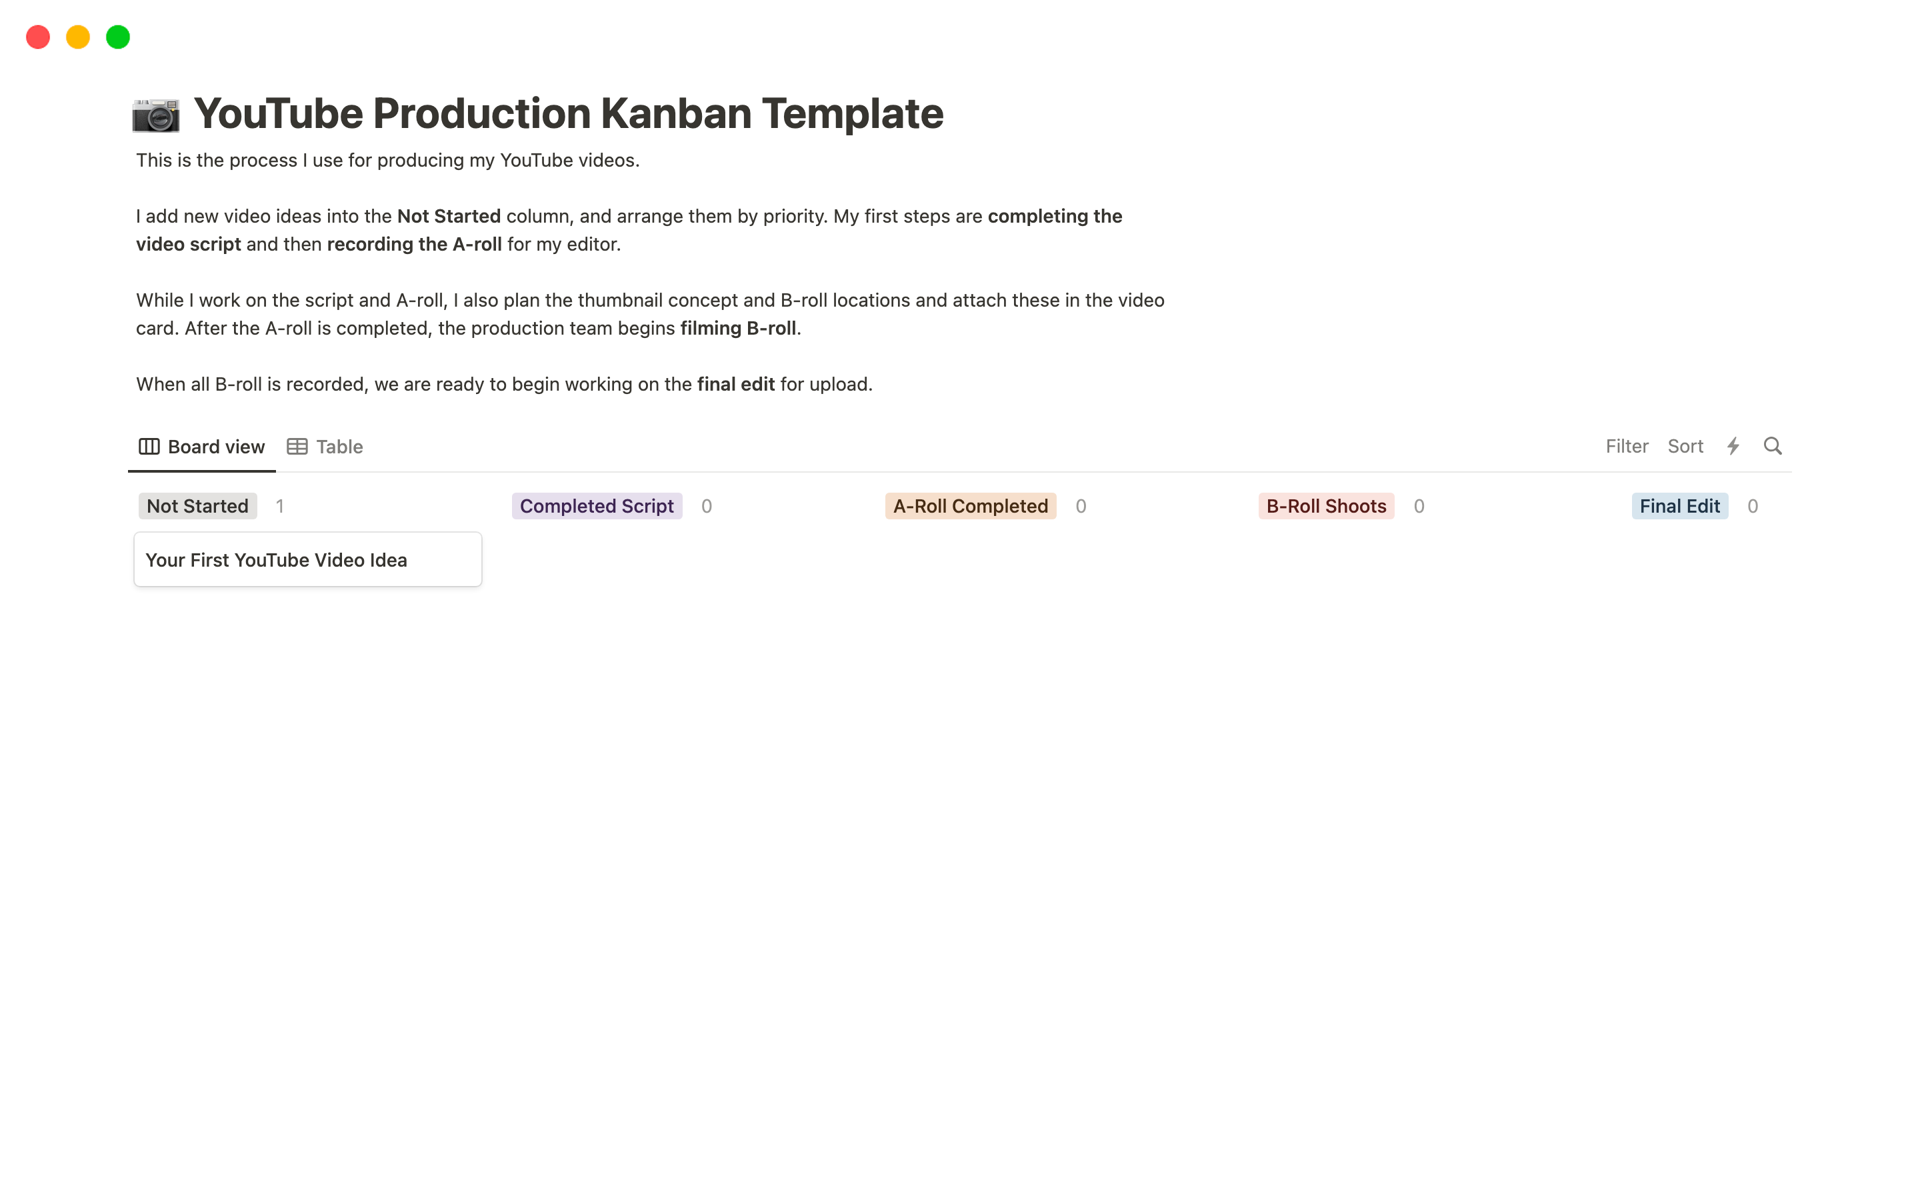 En forhåndsvisning av mal for Captain Sinbad’s YouTube Production Kanban